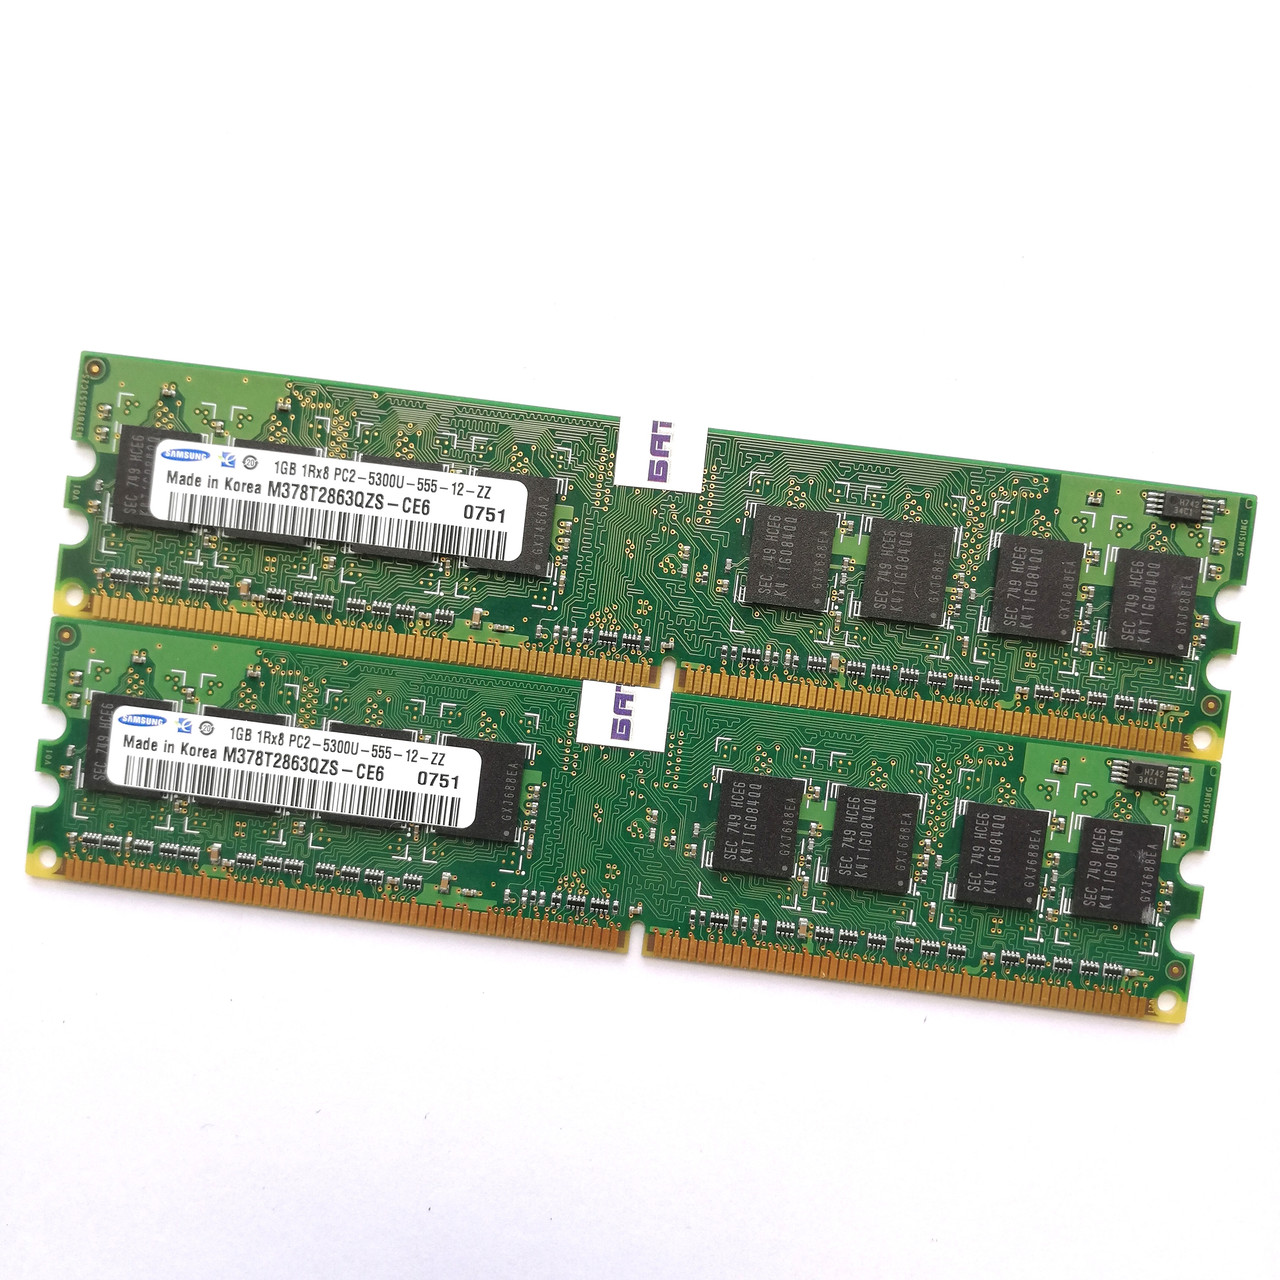 Комплект оперативной памяти Samsung DDR2 2Gb (1Gb+1Gb) 667MHz PC2 5300U 1R8 CL5 (M378T2863QZS-CE6) Б/У